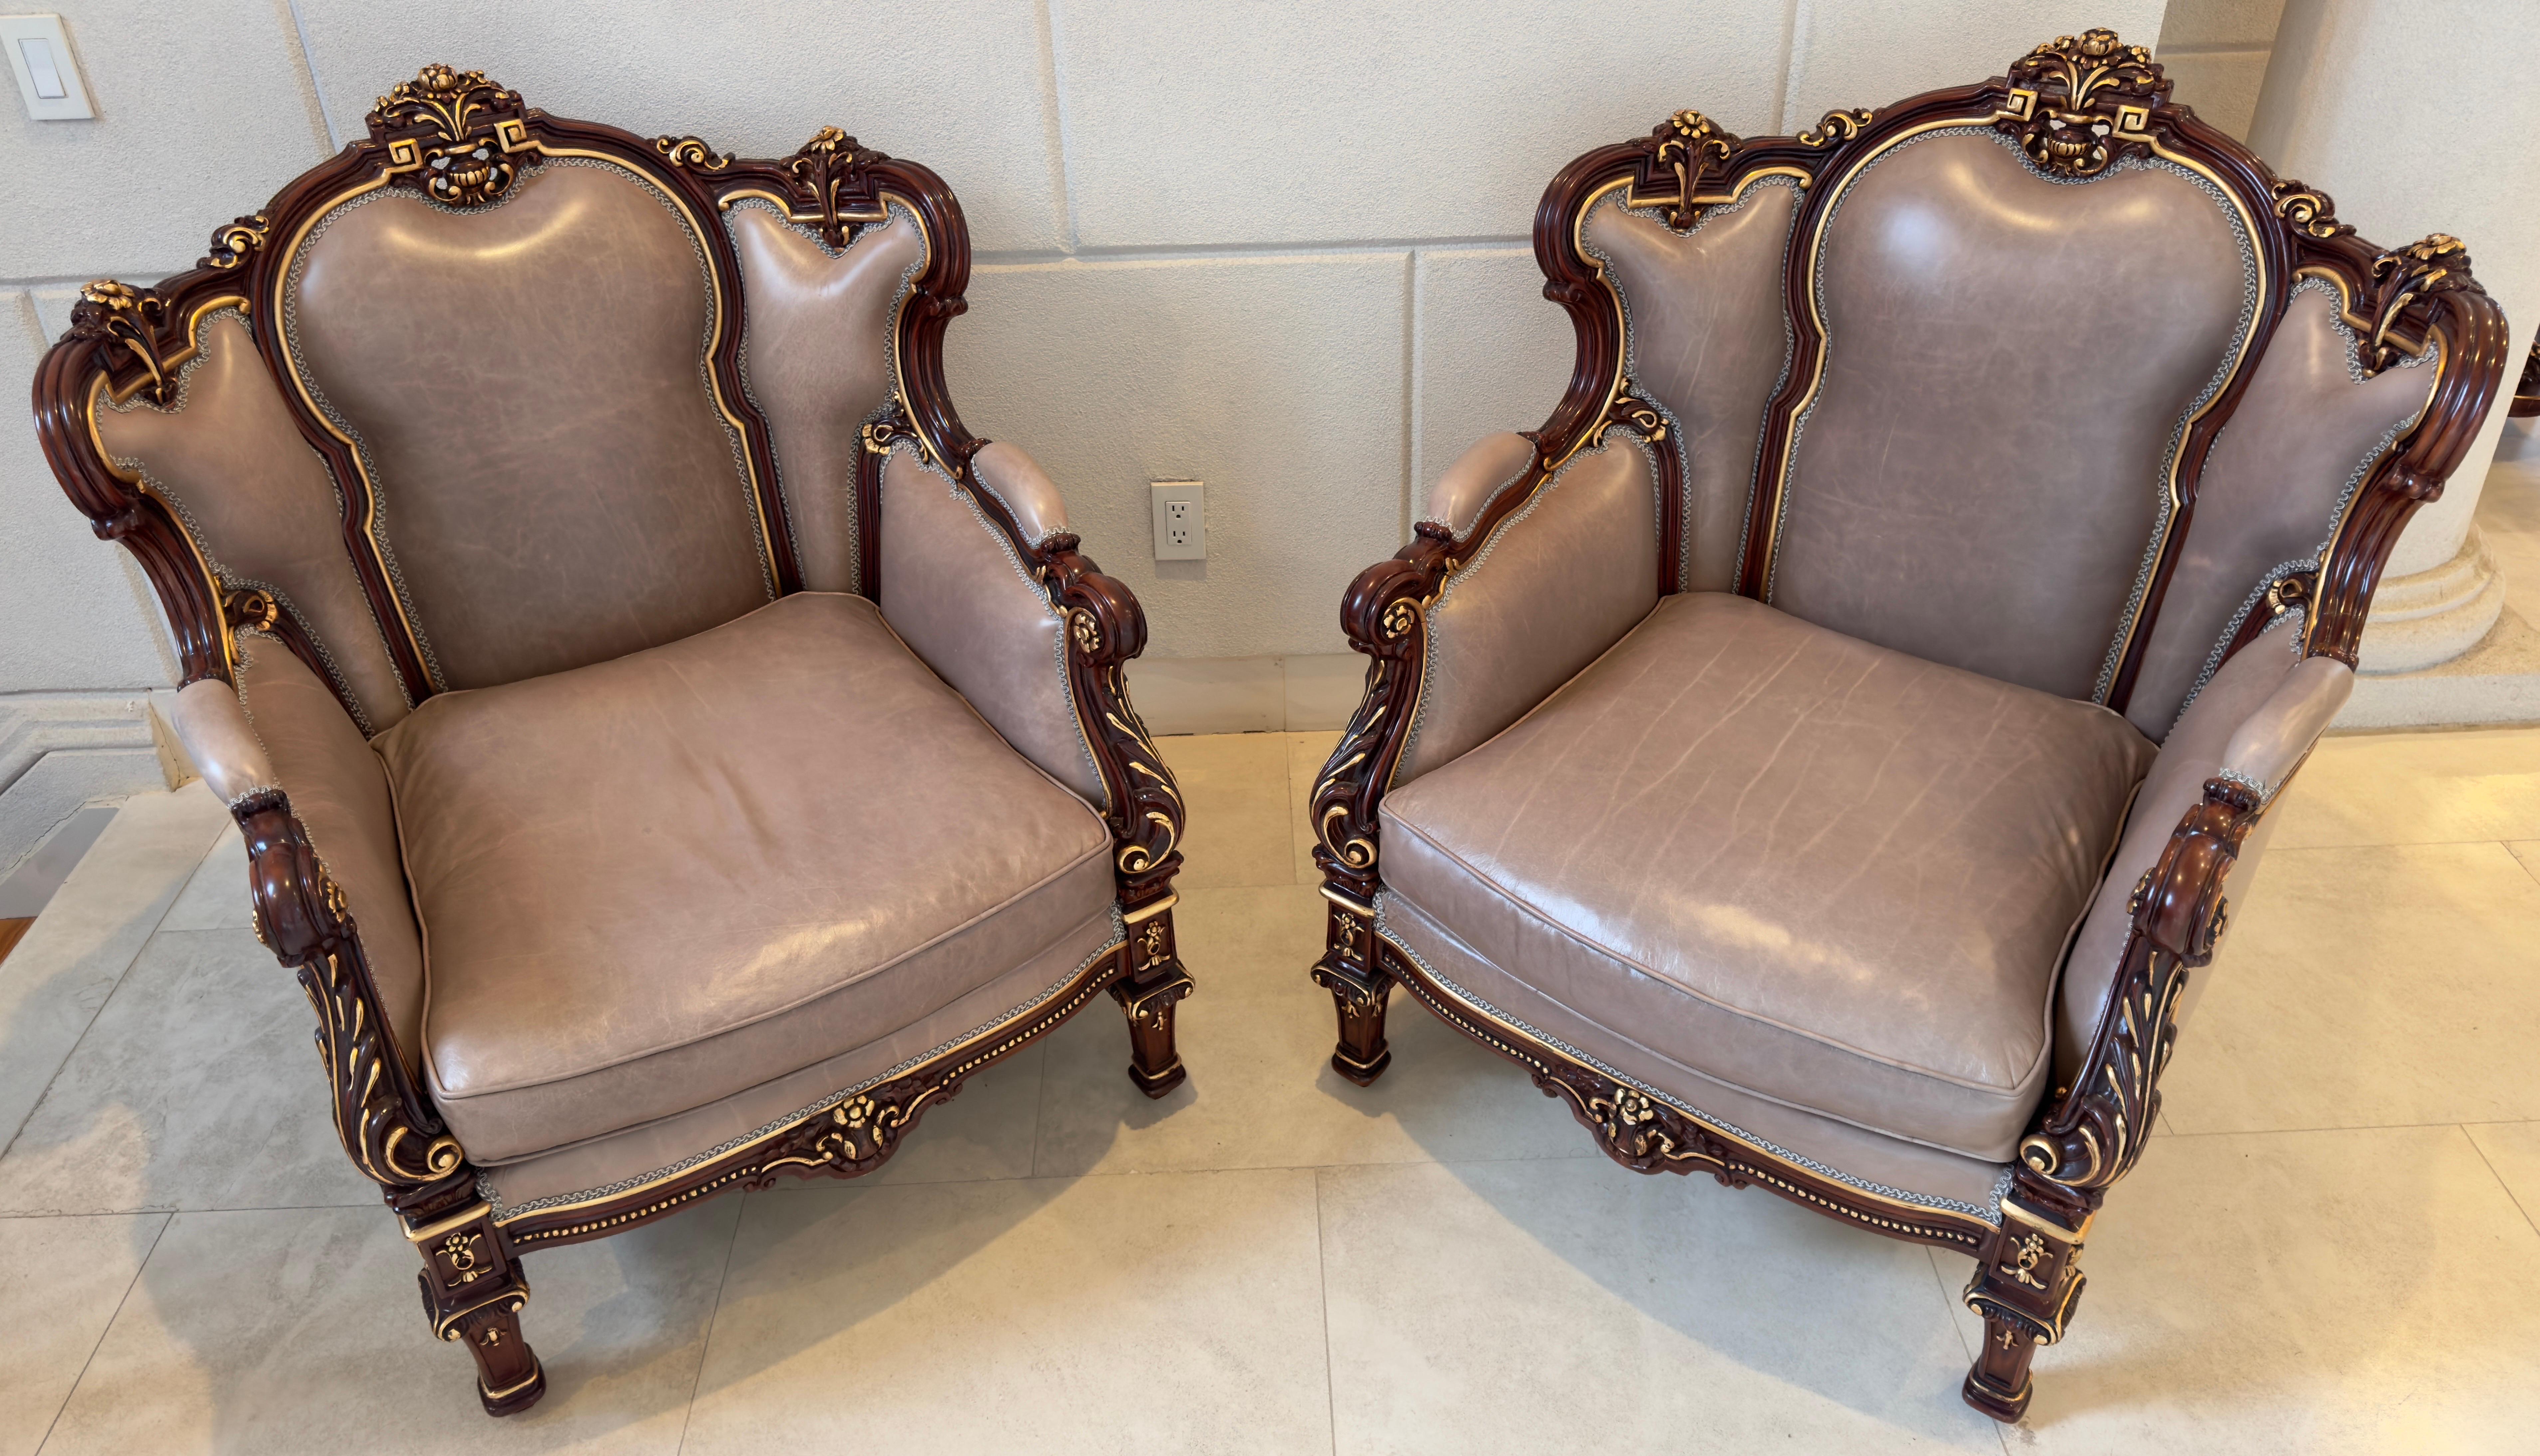 Une paire captivante de chaises Berger en bois sculpté de style rococo italien, chacune témoignant de la splendeur du design classique. Fabriquées avec précision, les montures exsudent l'opulence en acajou riche, méticuleusement ornées de sculptures